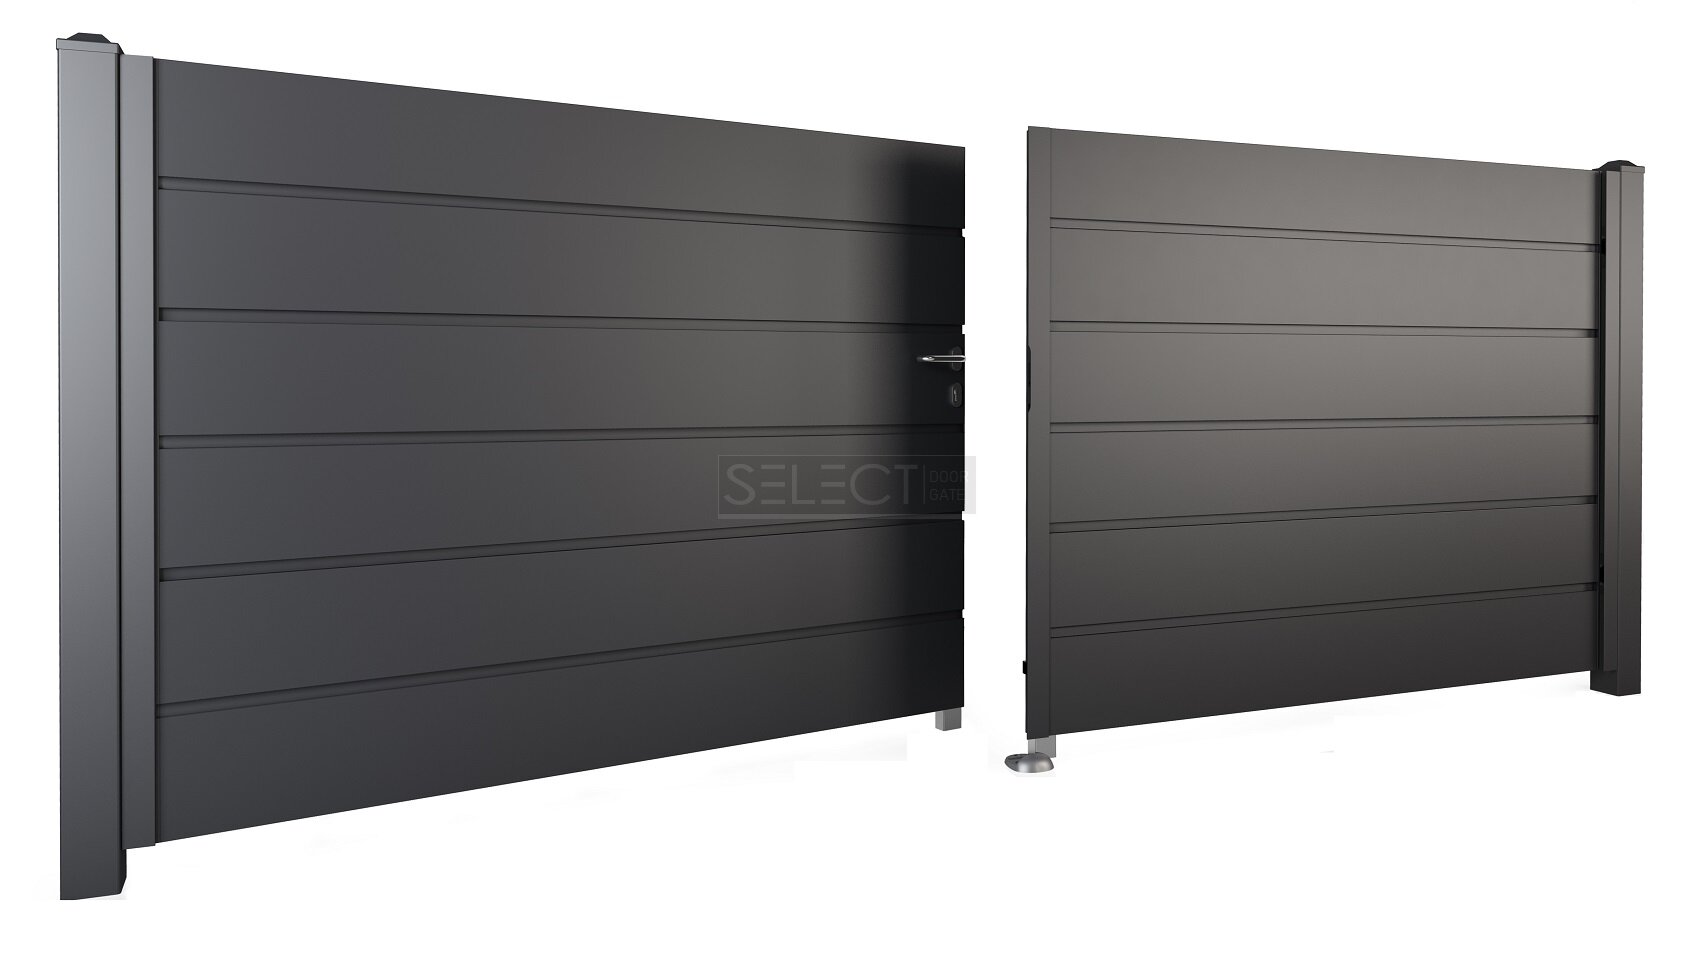 Оцинковані металеві відкатні ворота від виробника SELECT серія Panel